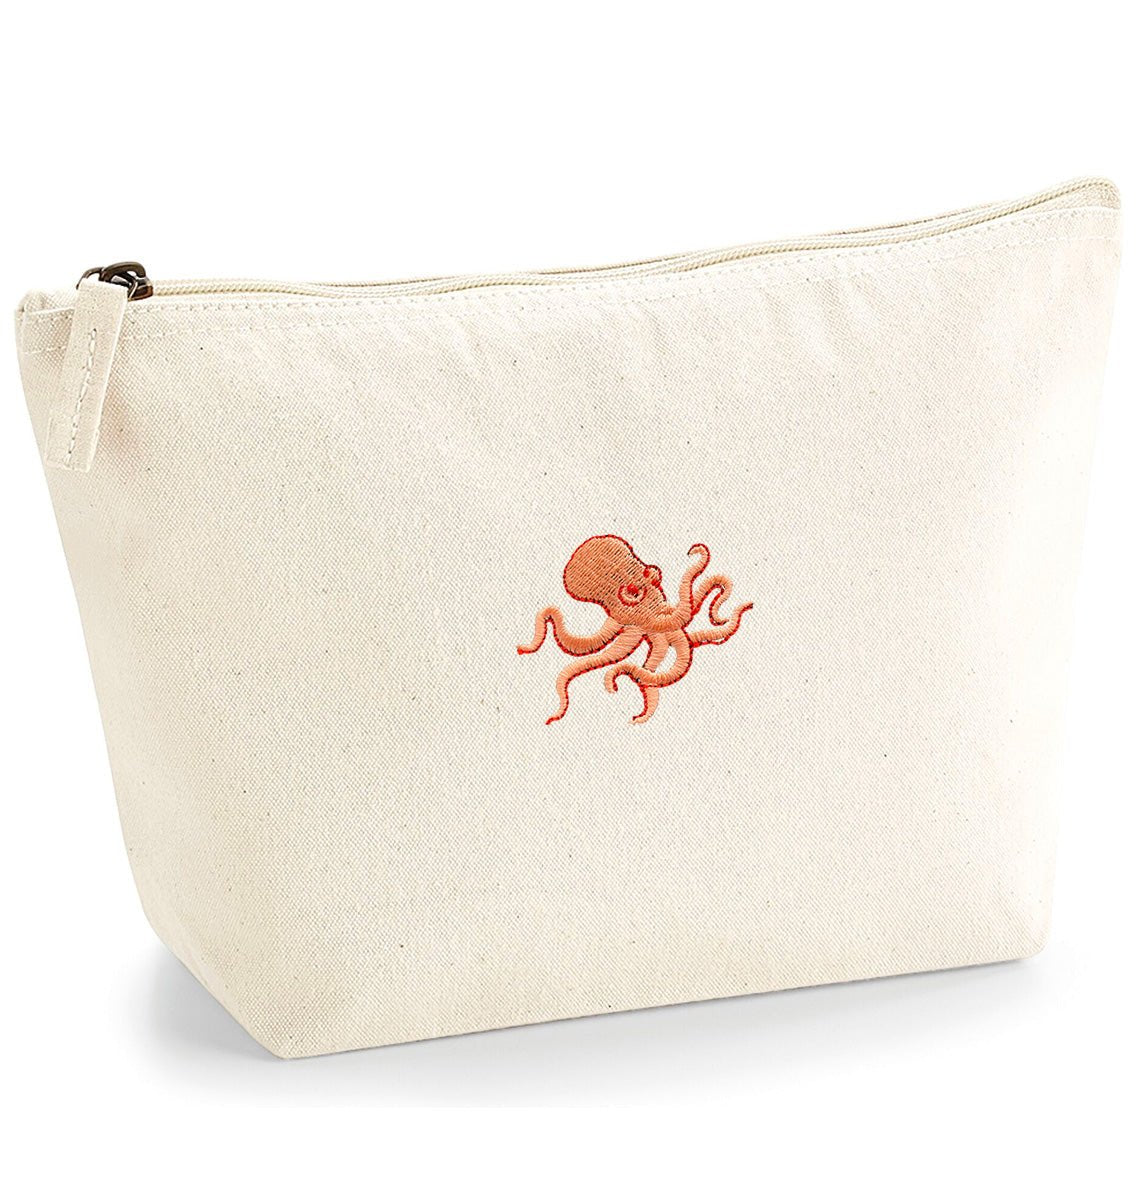 Octopus Organic Accessory Bag - Blue Panda